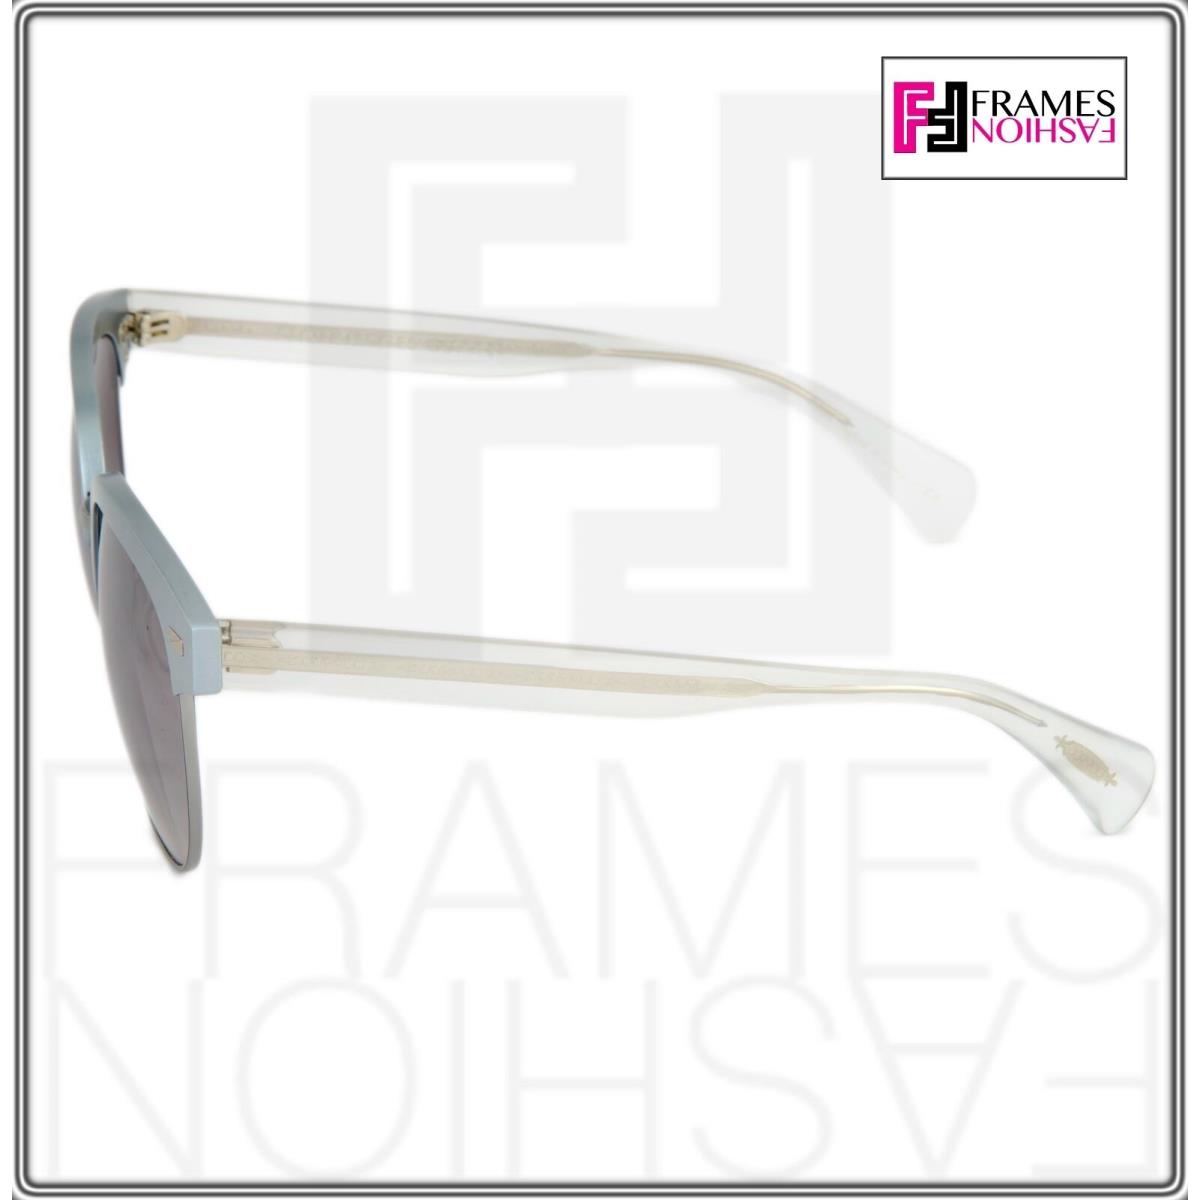 Oliver Peoples sunglasses  - Crystal frost Gunmetal Frame, Grey Lens 2